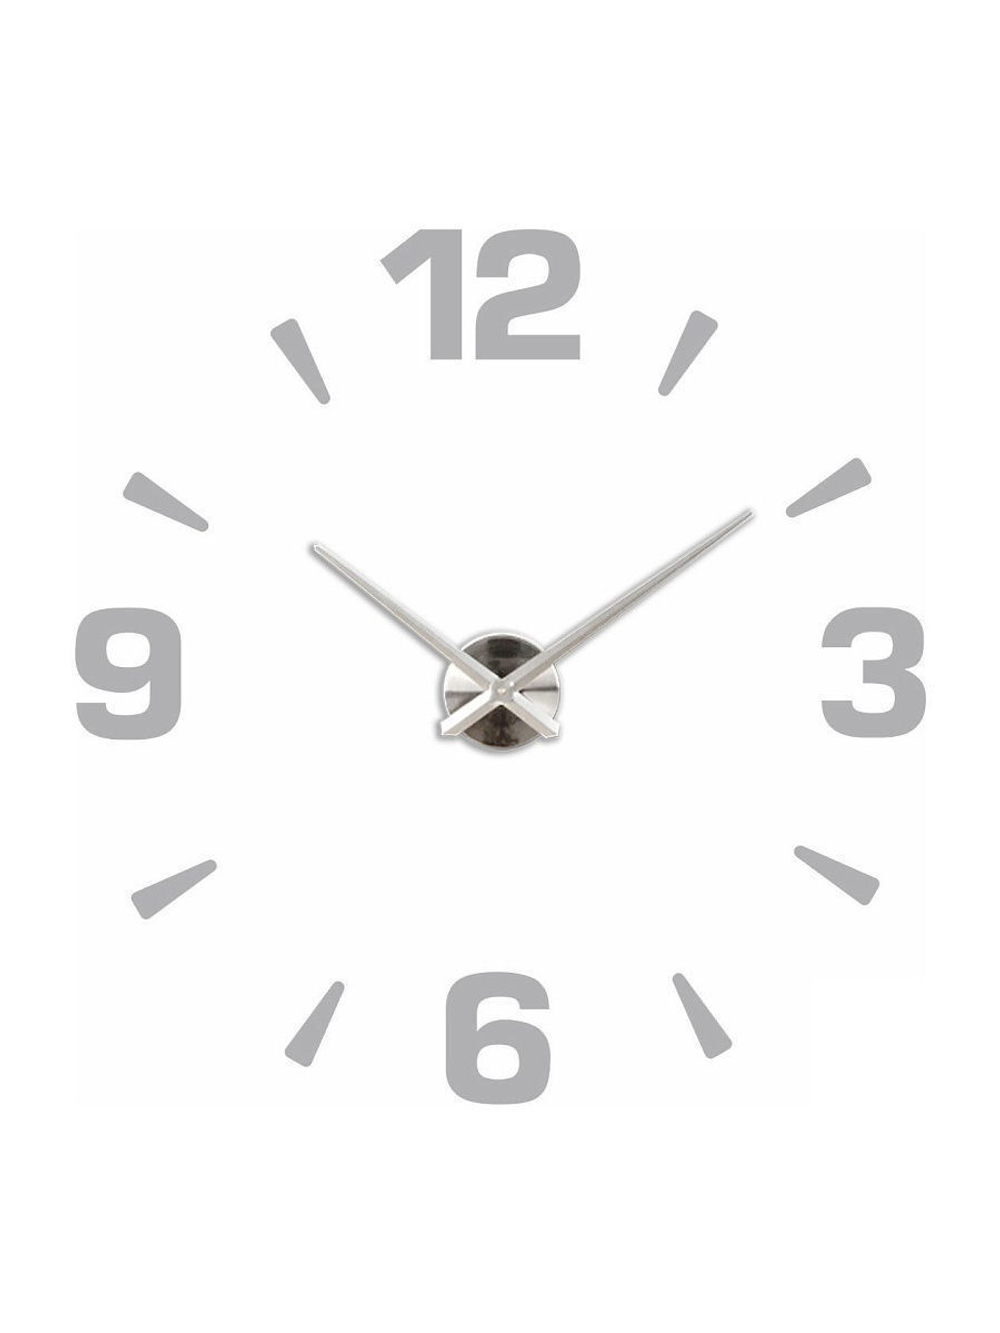 Настенные 3D часы большие самоклеящиеся D 100 120 см / Часы 3d настенные / Настенные часы 3d